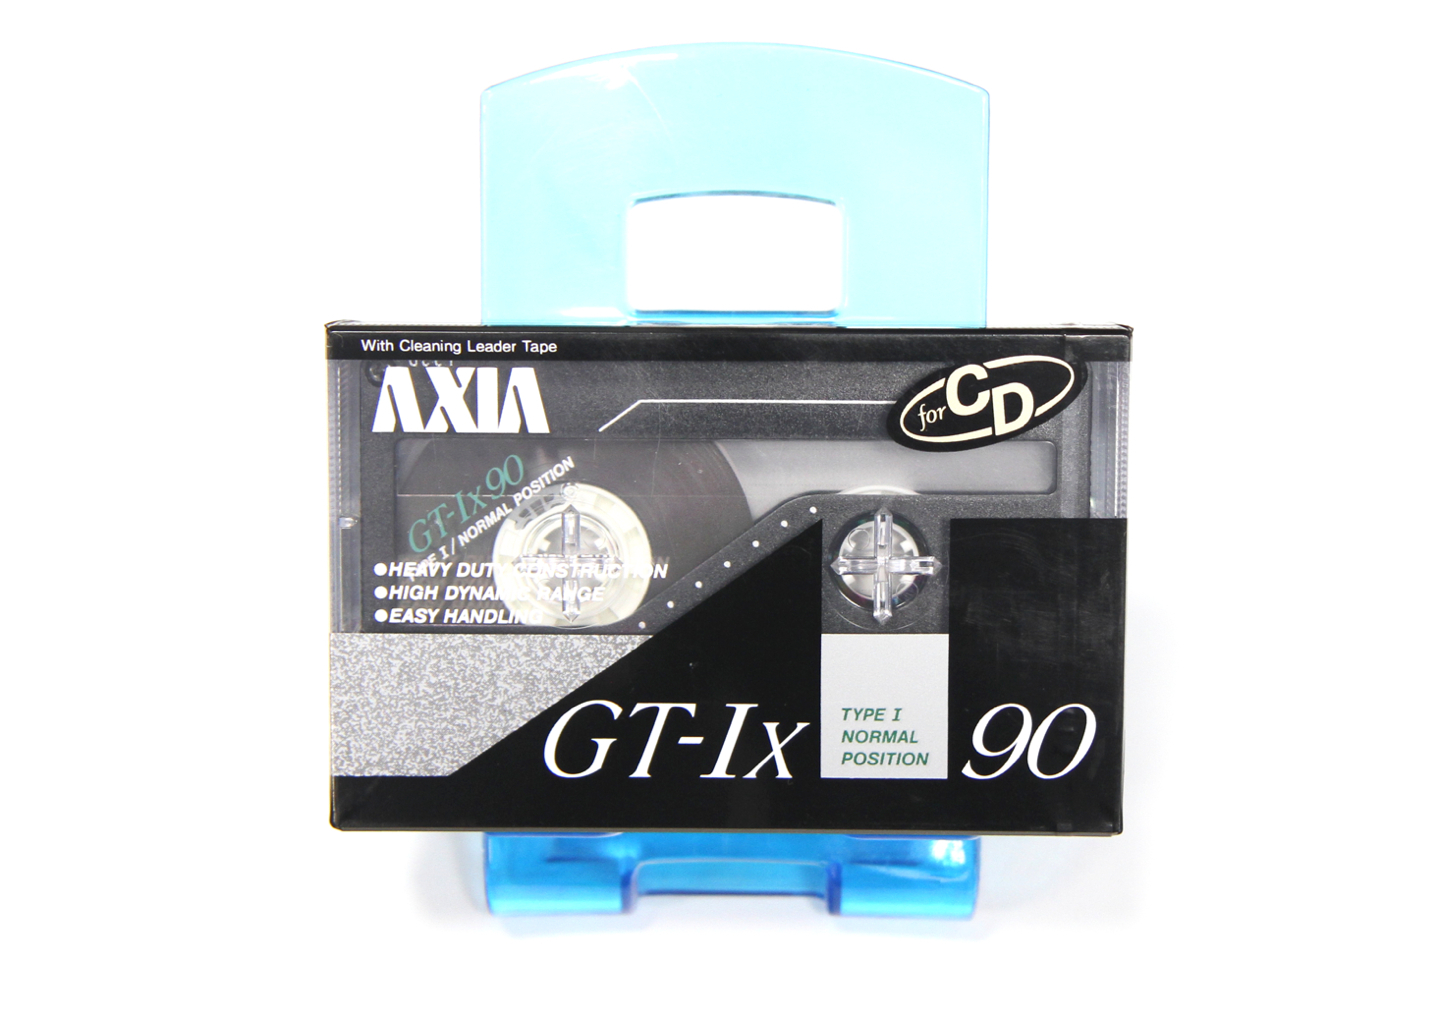 AXIA GT-Ix90 Japan